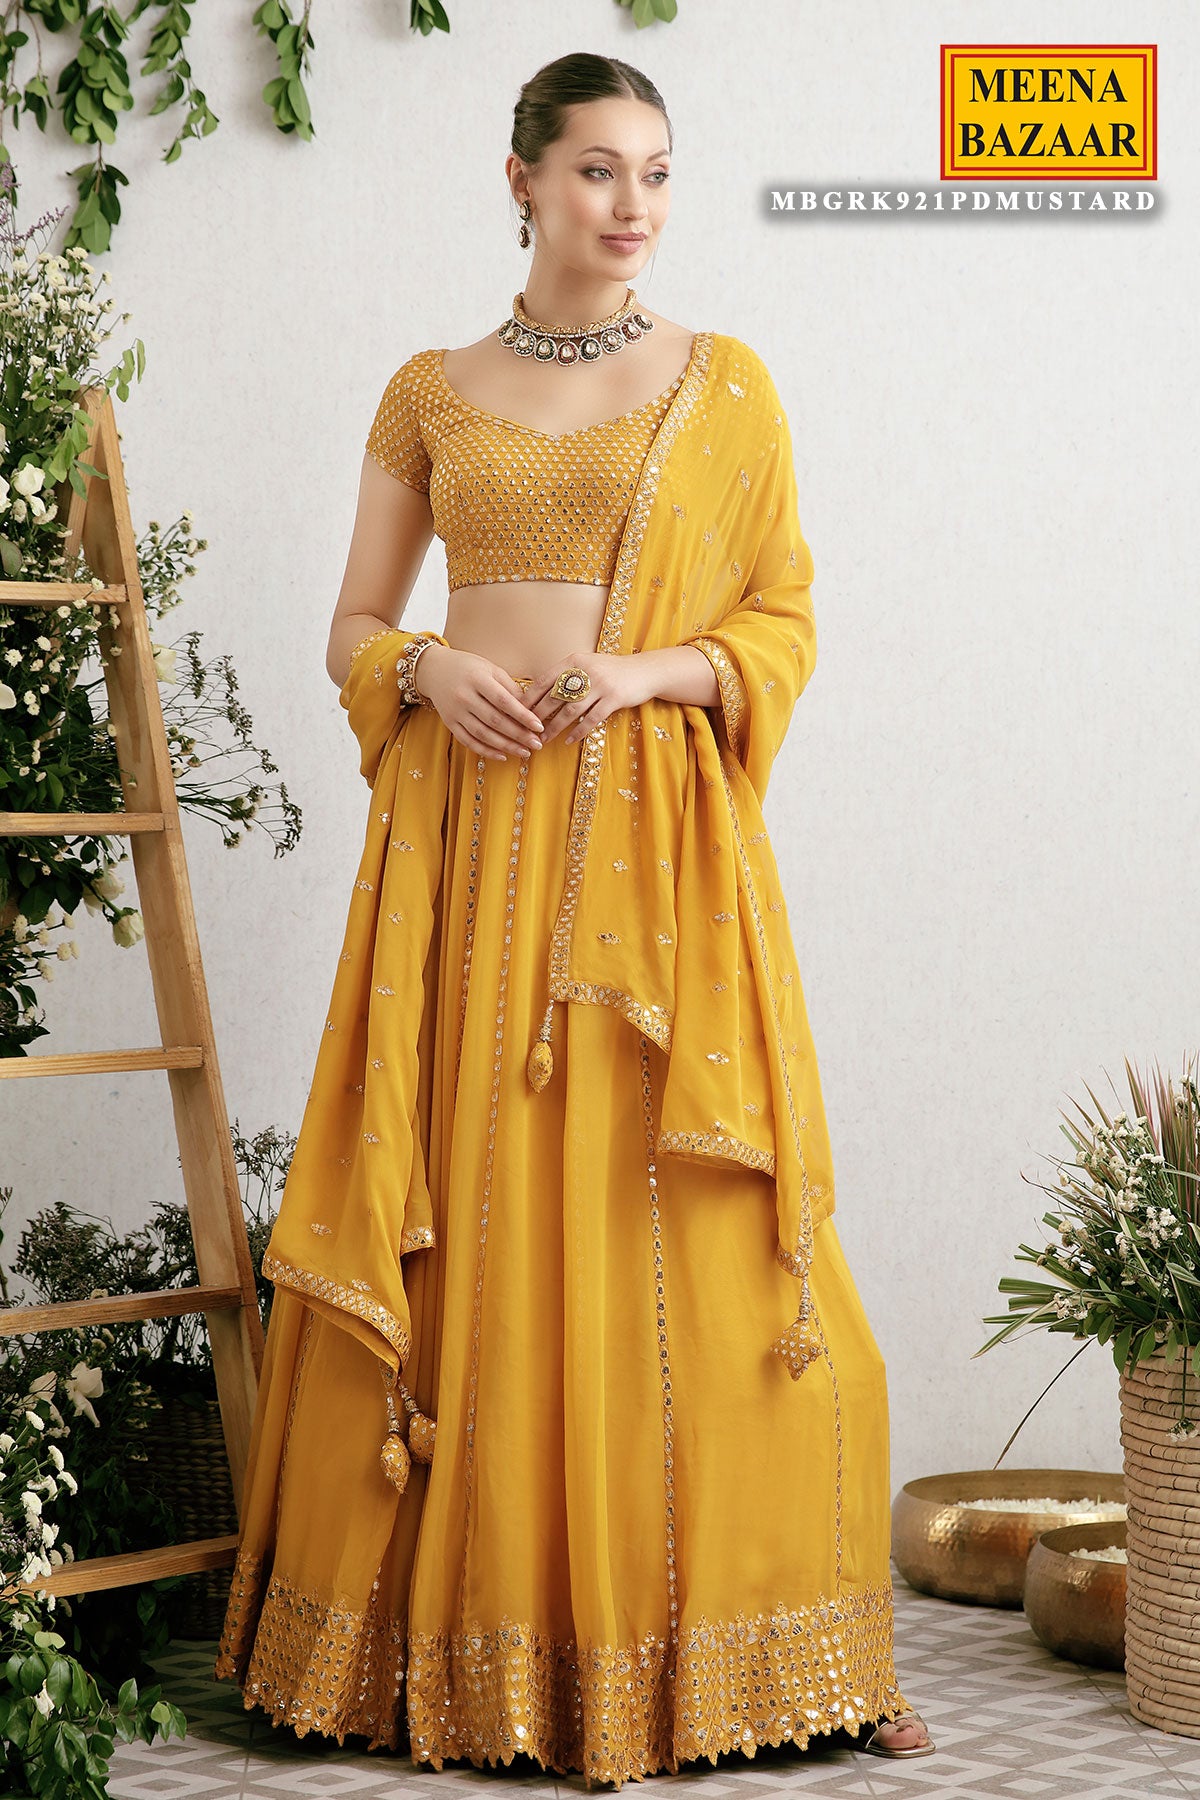 Meena Bazaar Gowns